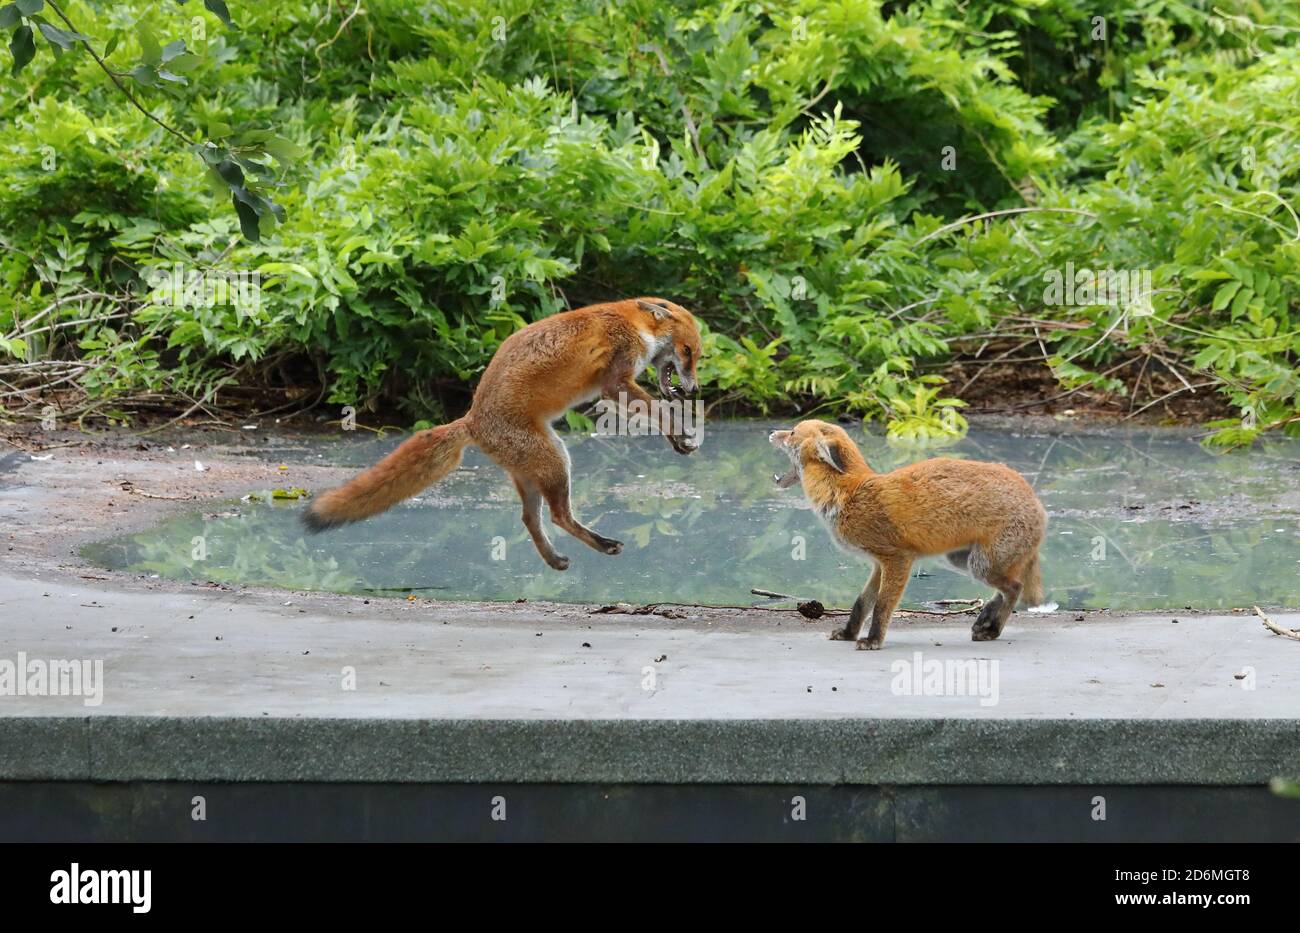 Wilde, städtische Rotfüchse, Vulpesvulpen, spielen kämpfen in Birmingham, England, Großbritannien. Stockfoto